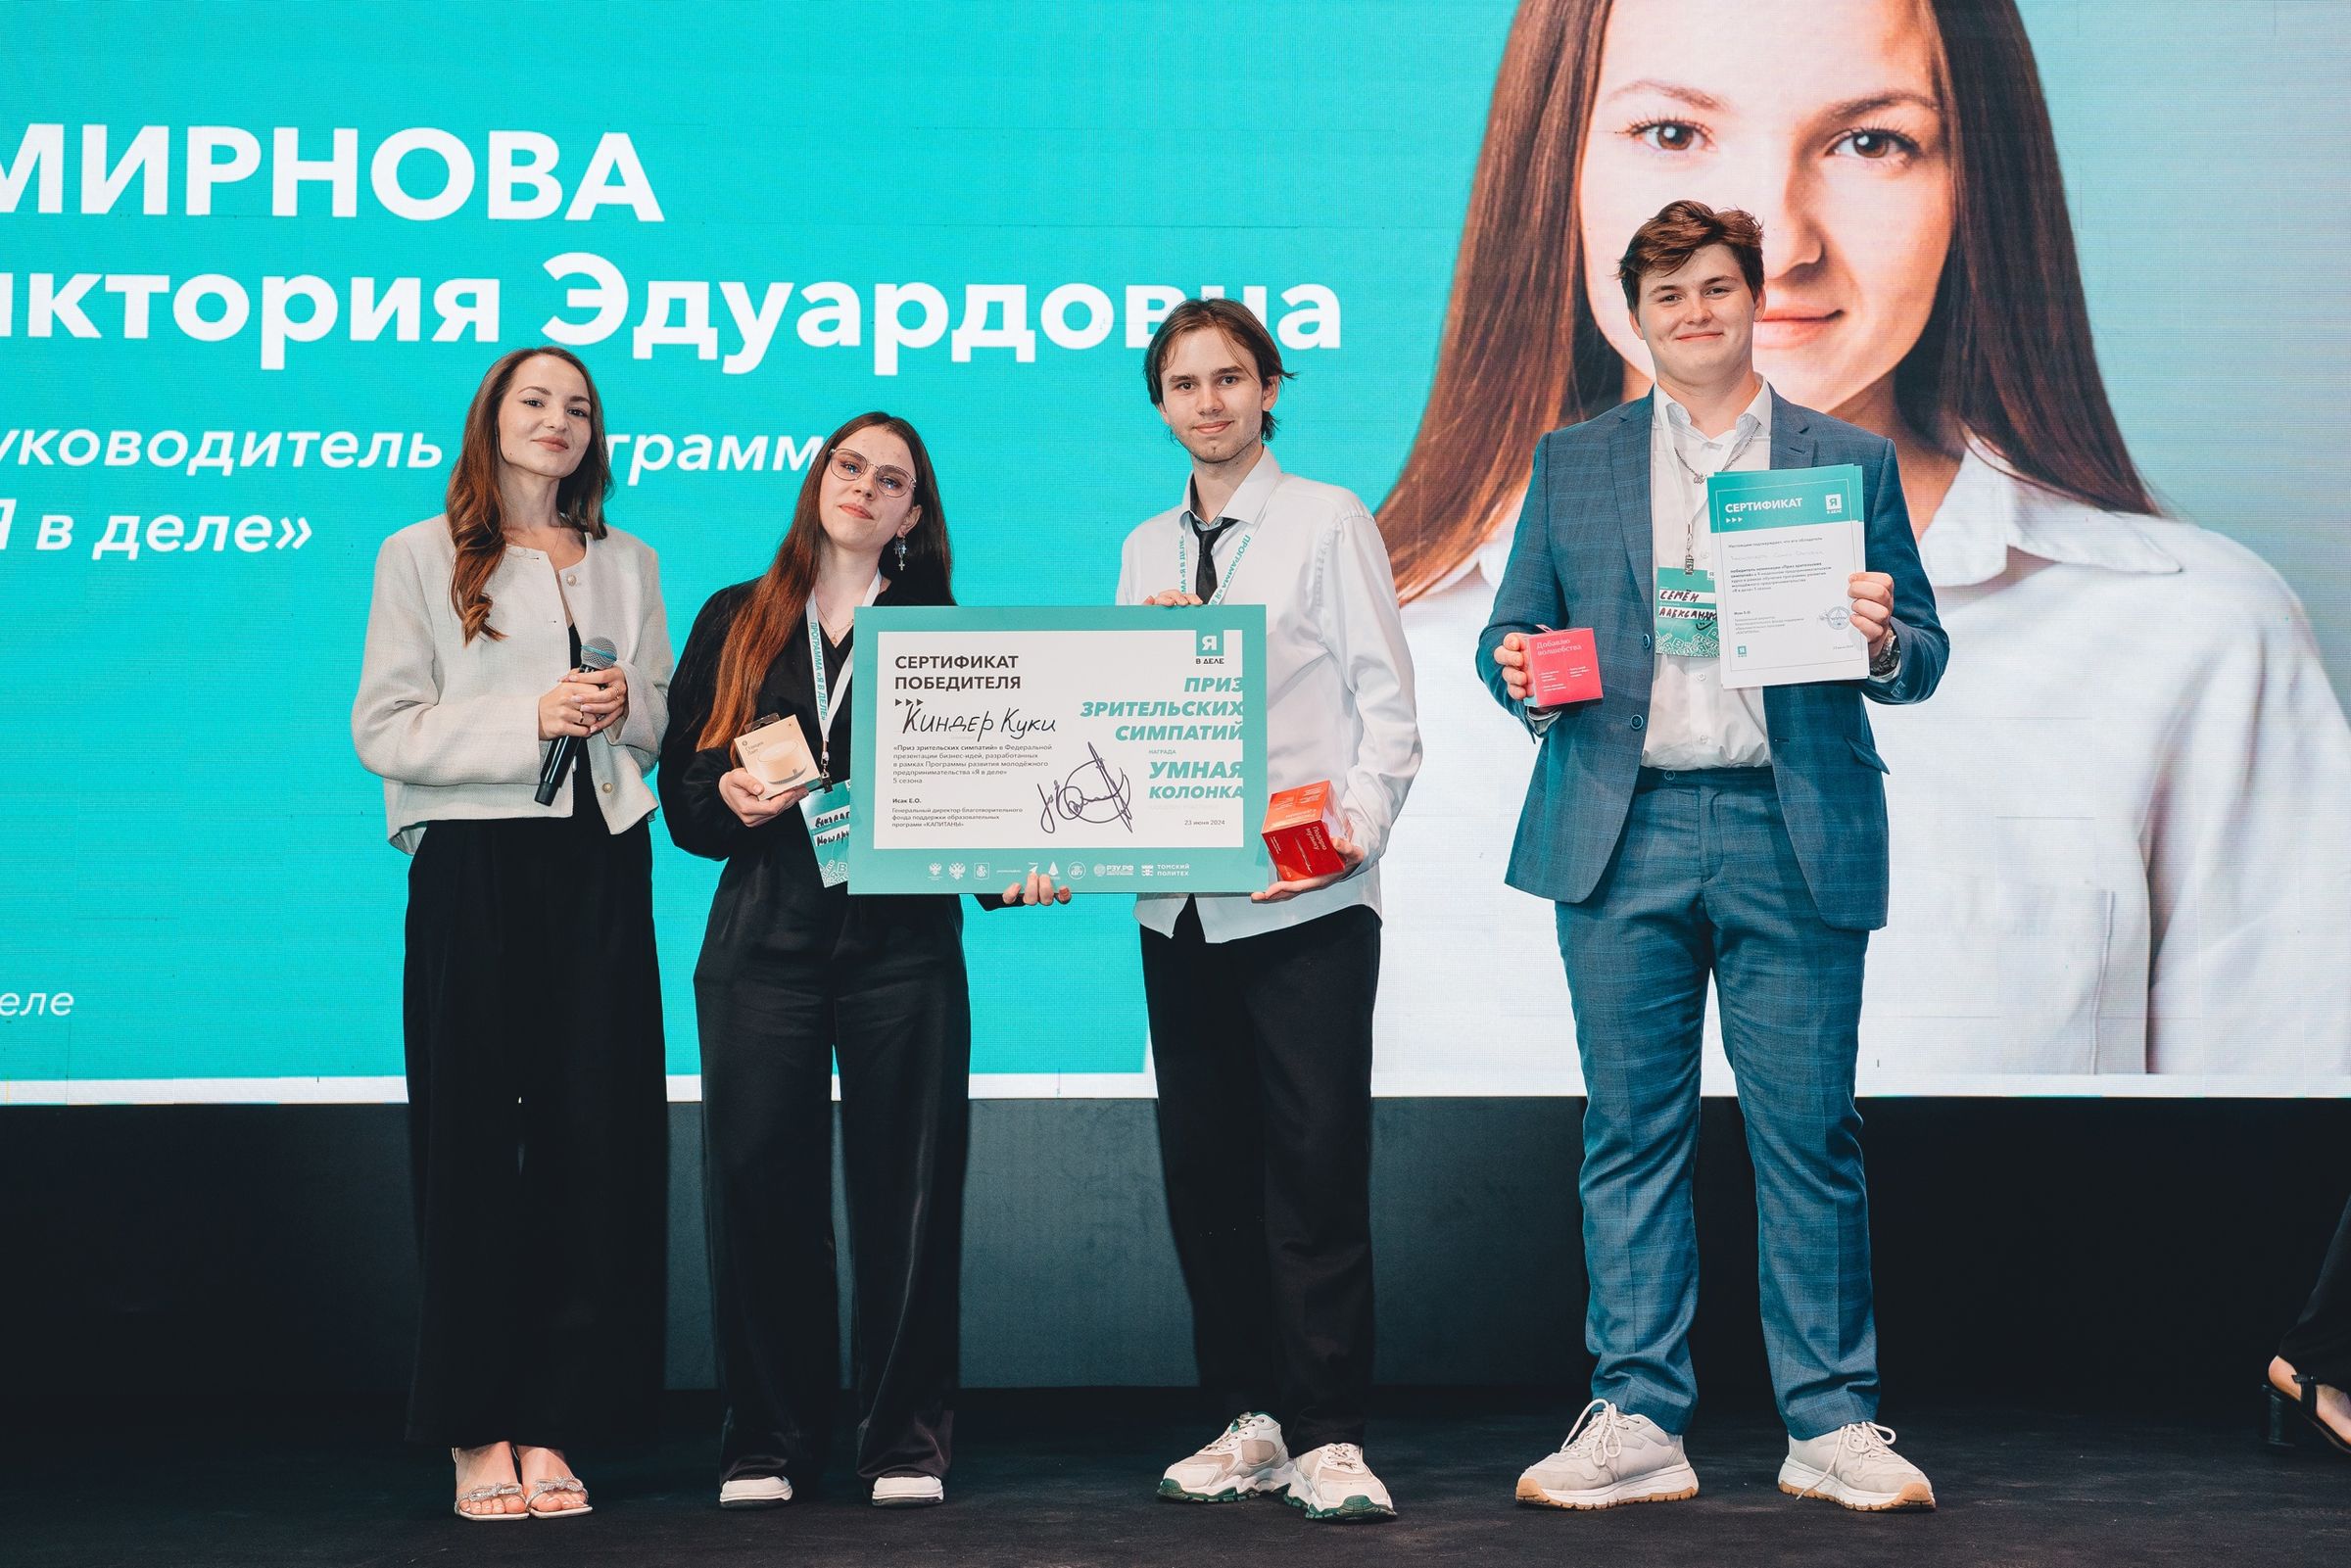 Стартап-проект студентов ЯГТУ победил в пятом сезоне федеральной программы развития молодёжного предпринимательства